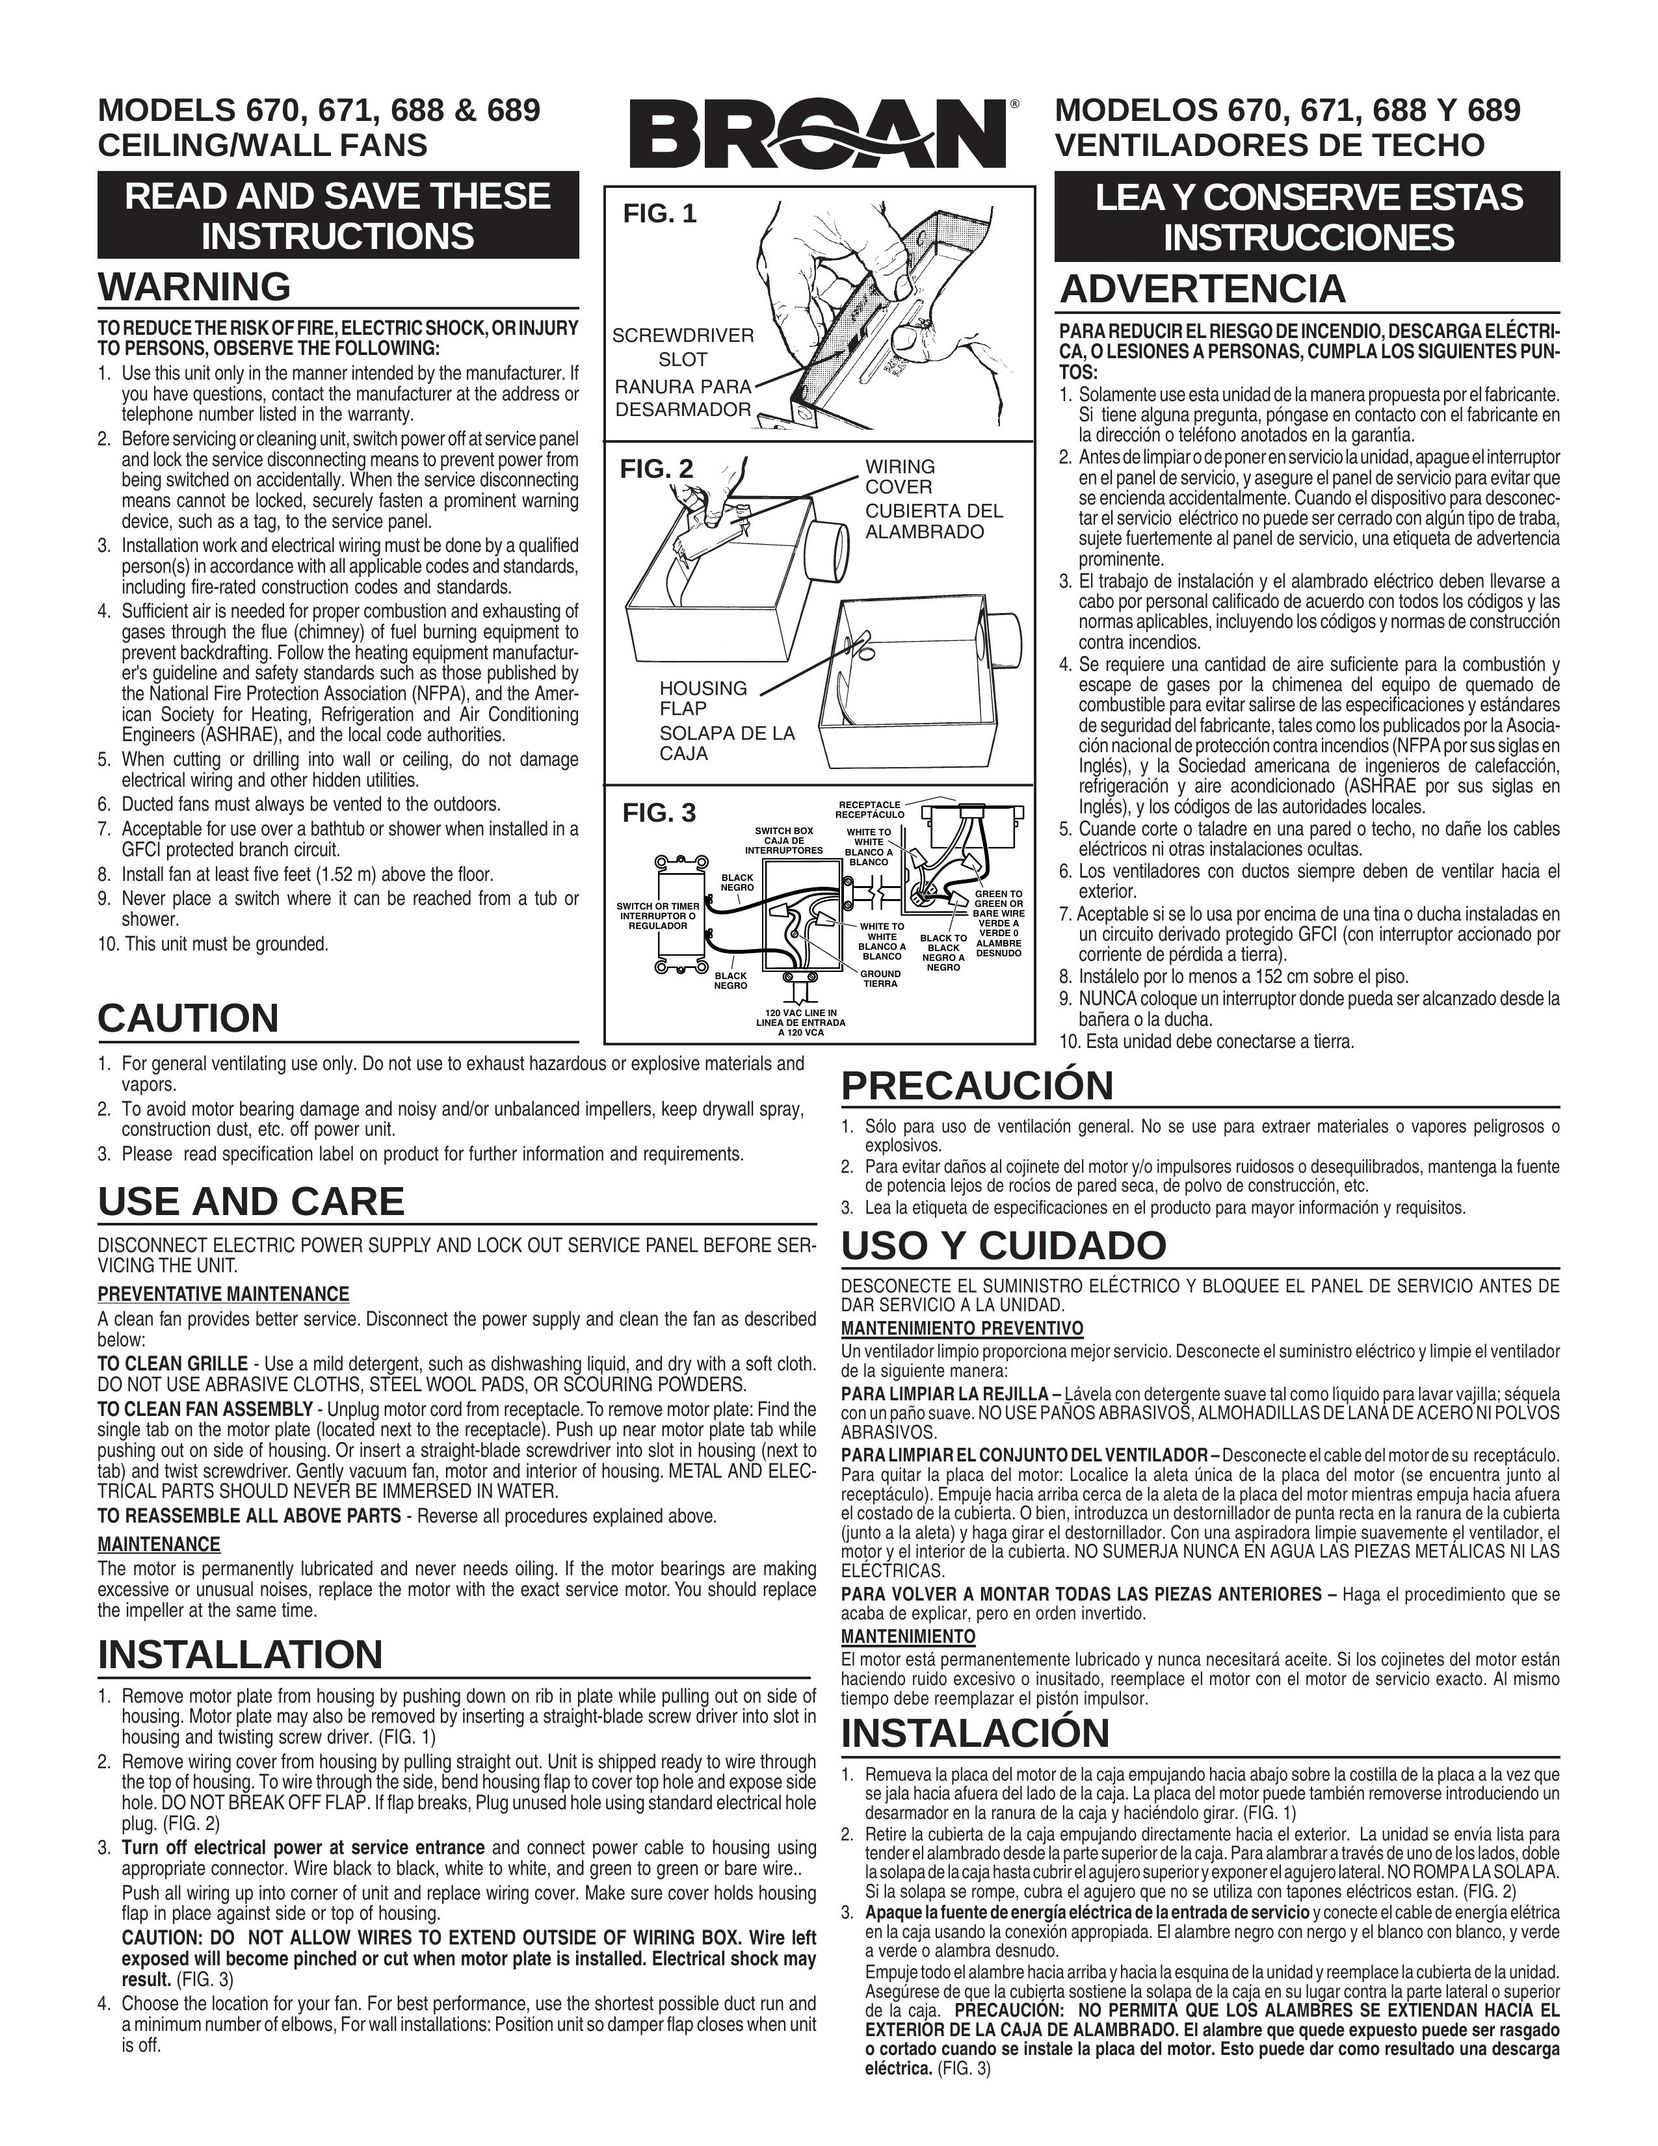 Broan 689 Fan User Manual